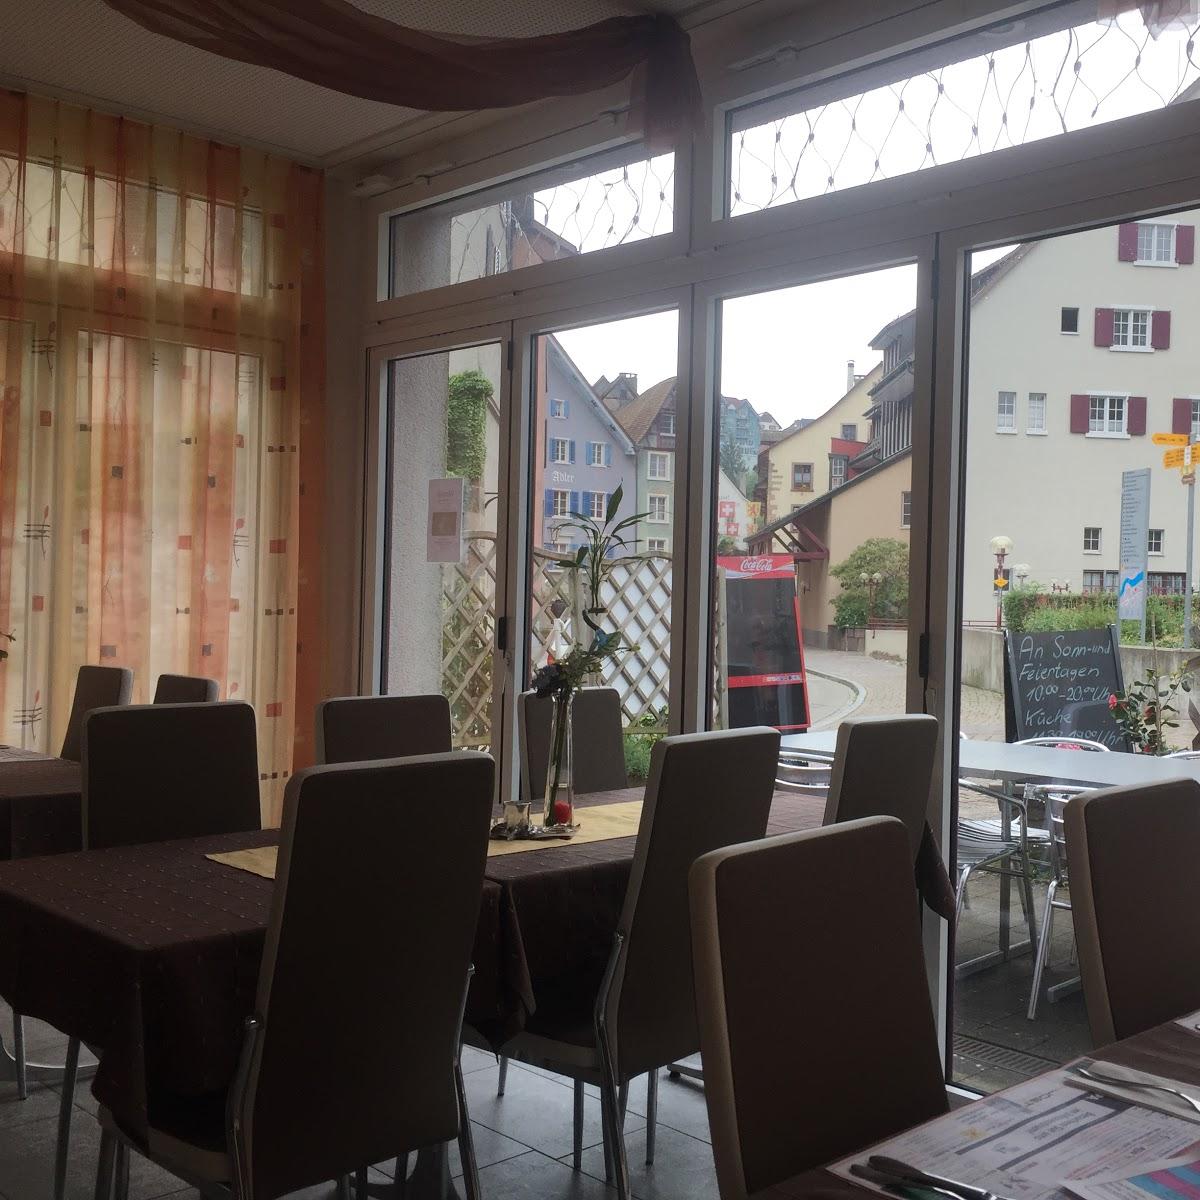 Restaurant "Warteck" in Laufenburg